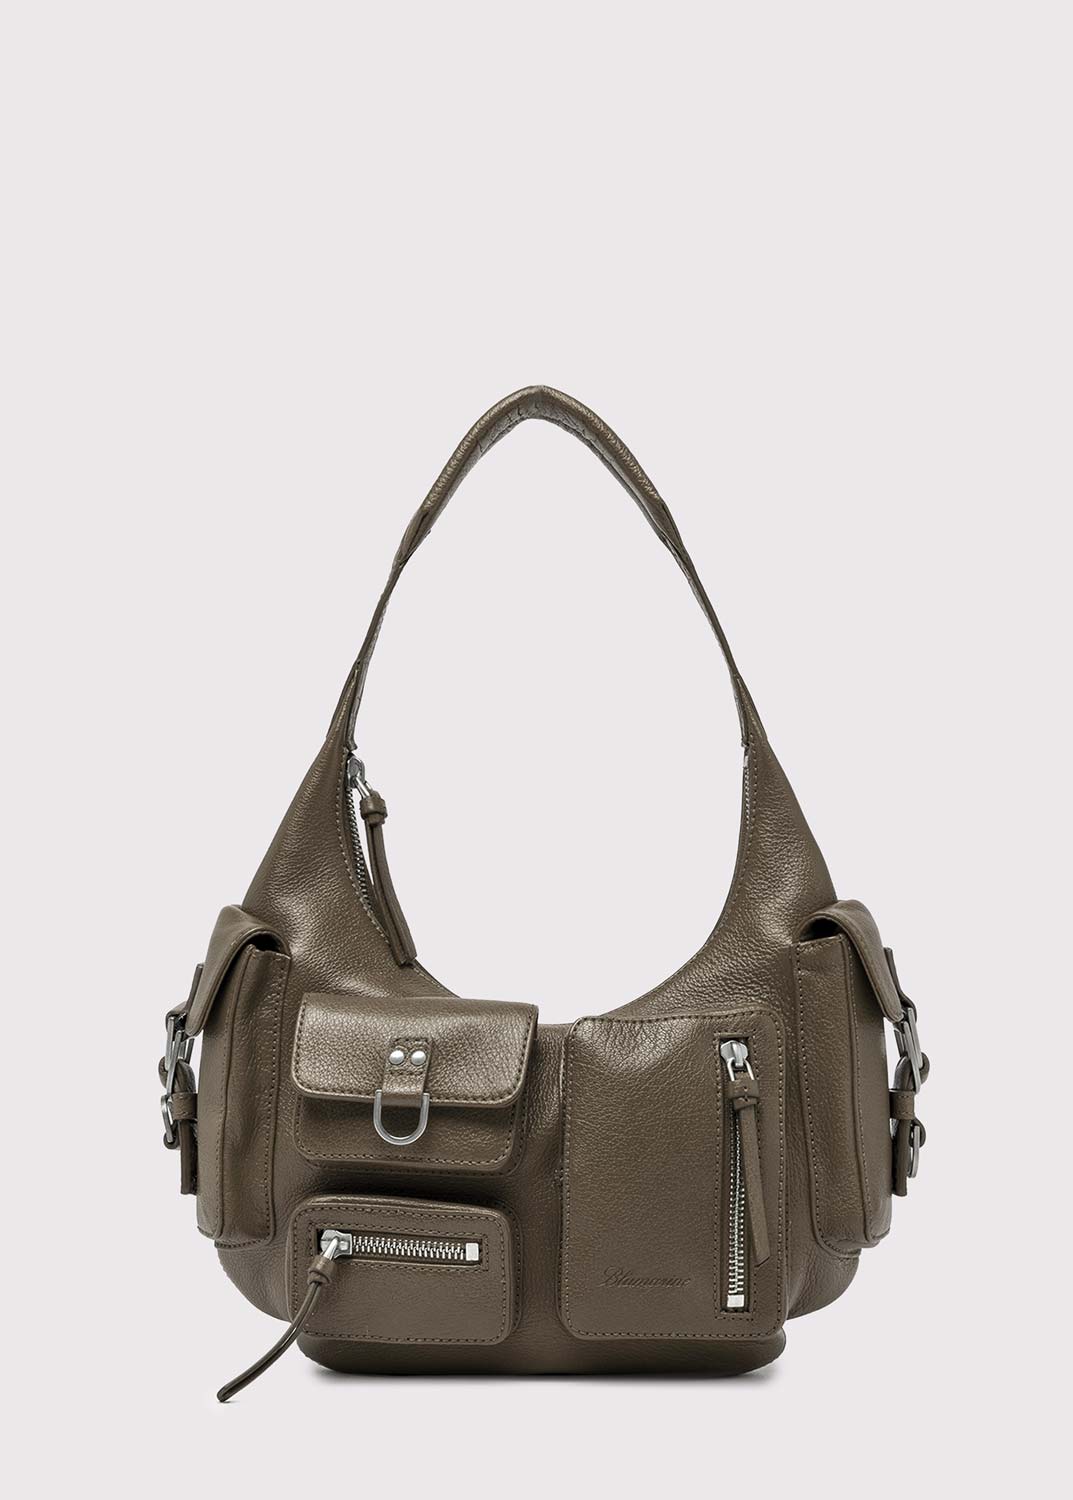 Longchamp Mini Pouch with handle Cognac Color women handbag